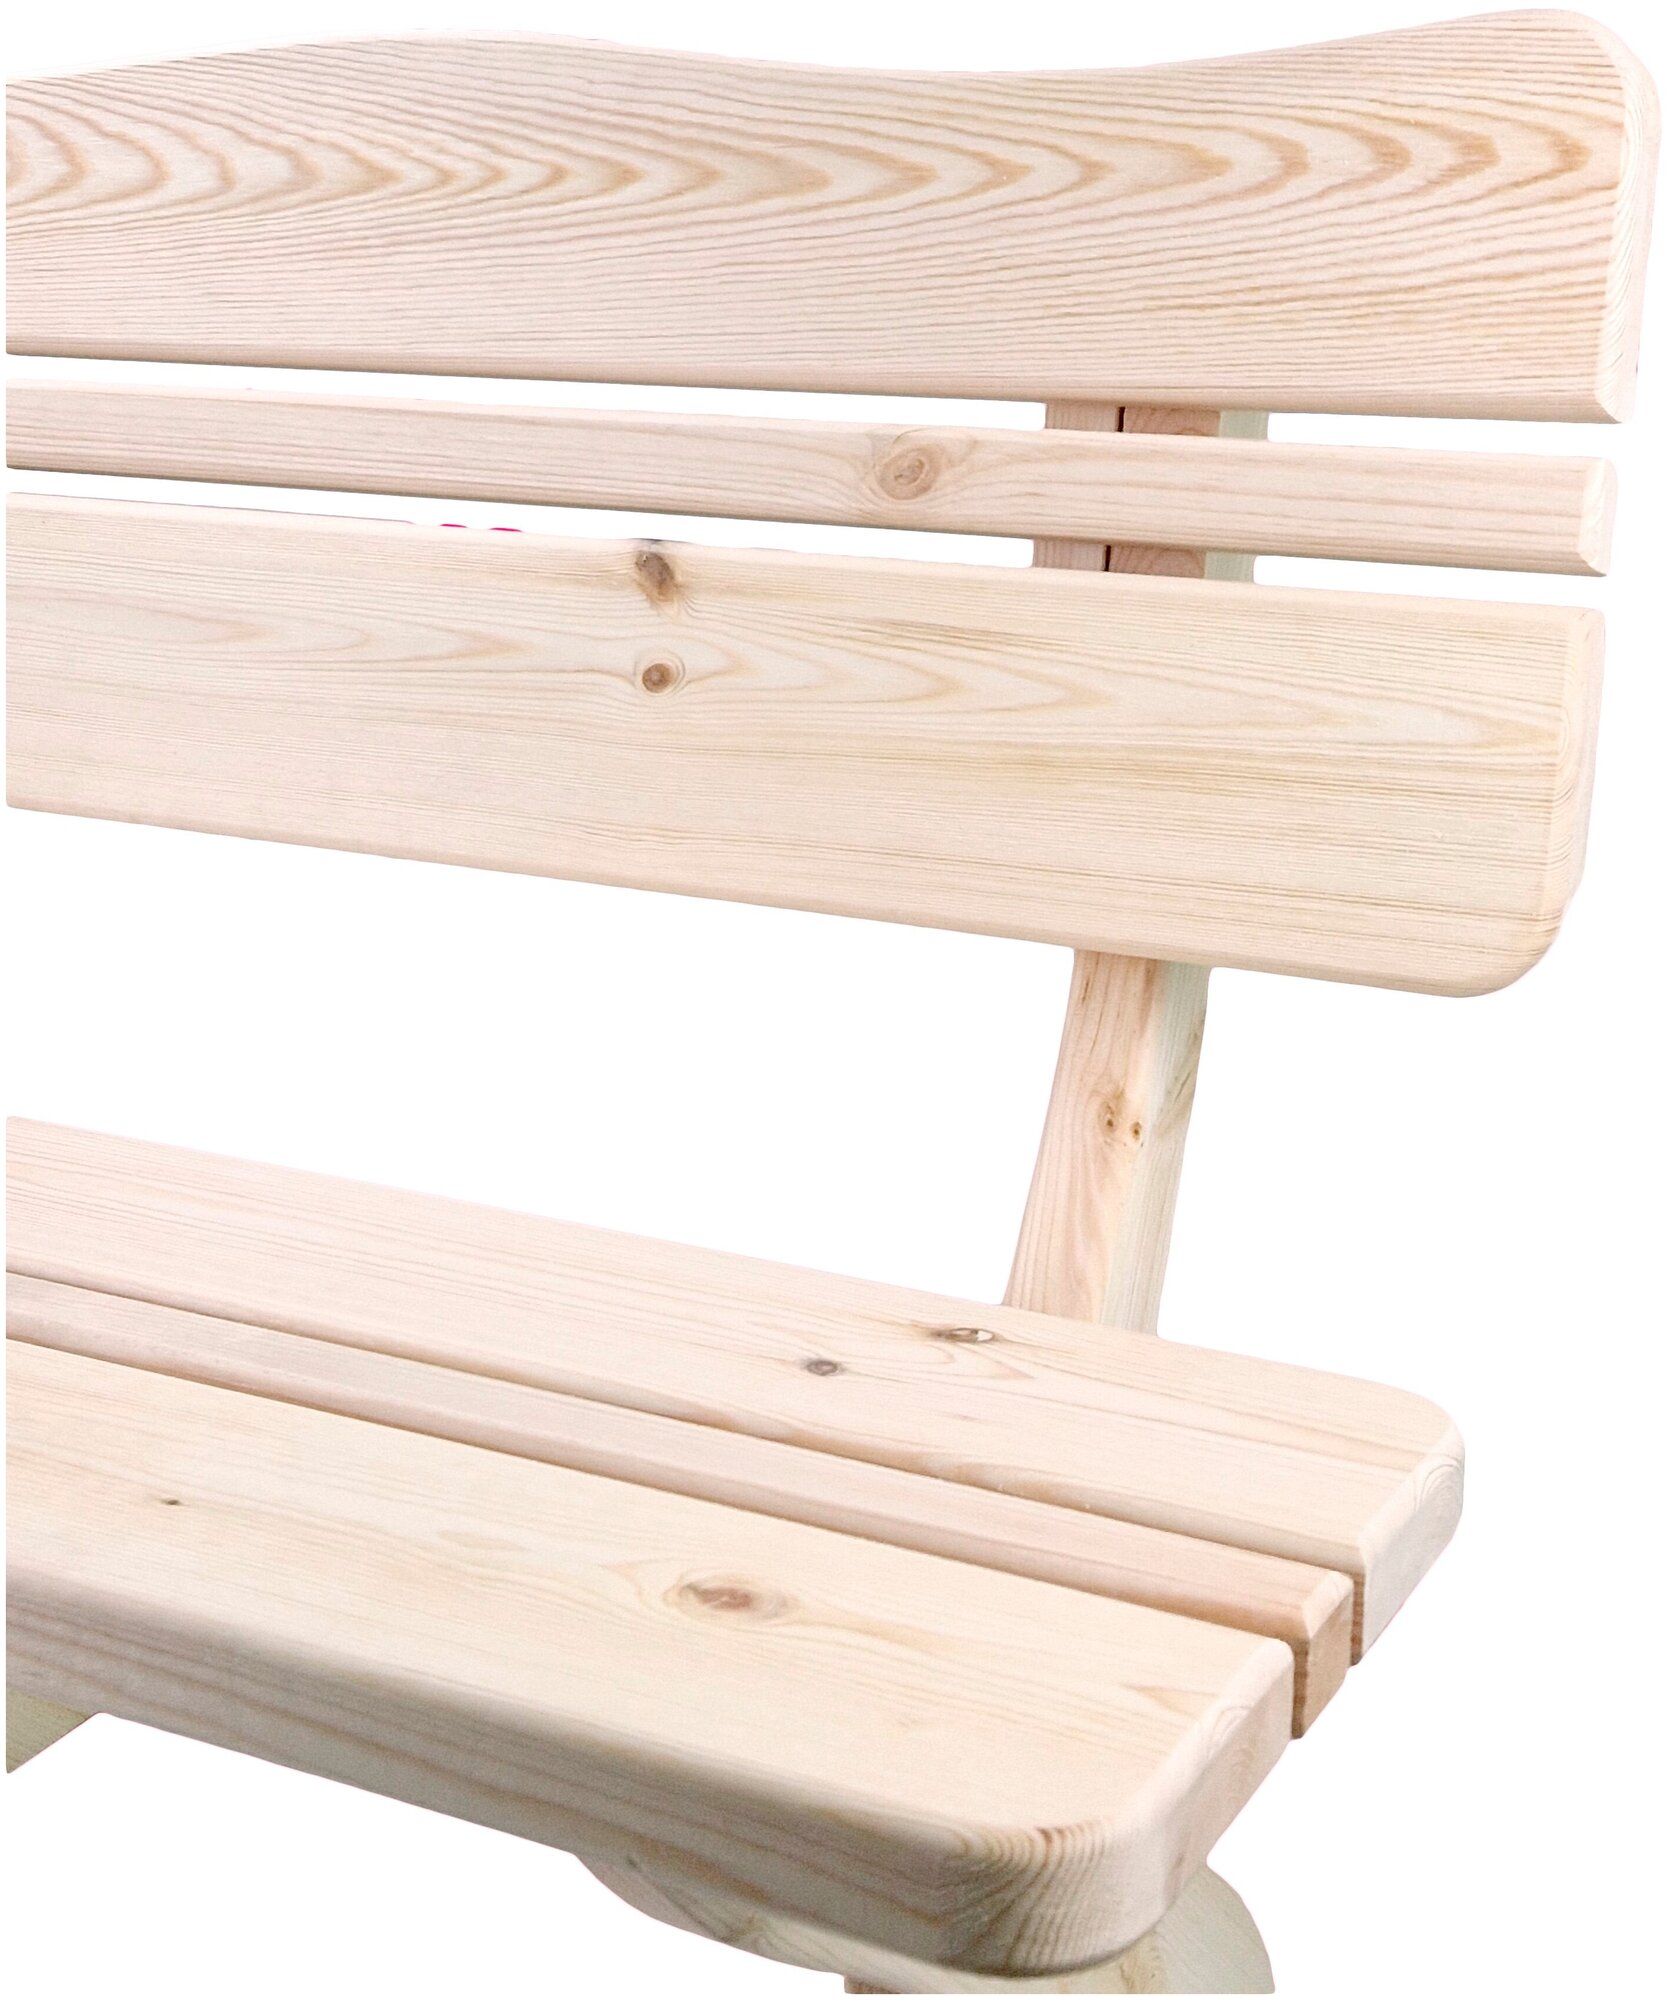 Скамейка со спинкой деревянная 1,2 метра из массива Вологодской сосны. Для сада / дома / бани /сауны